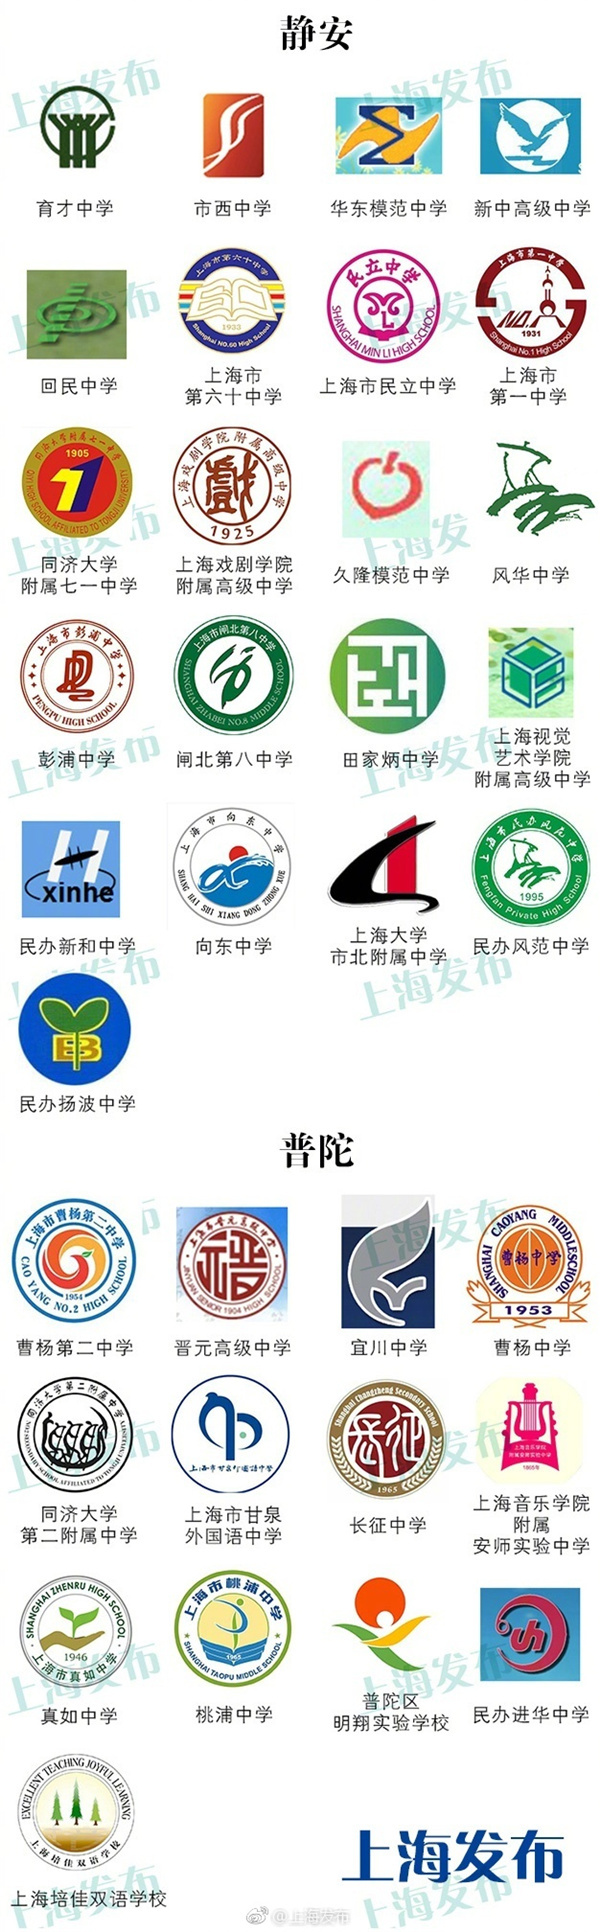 上海219所高中校徽 你的母校在哪里?